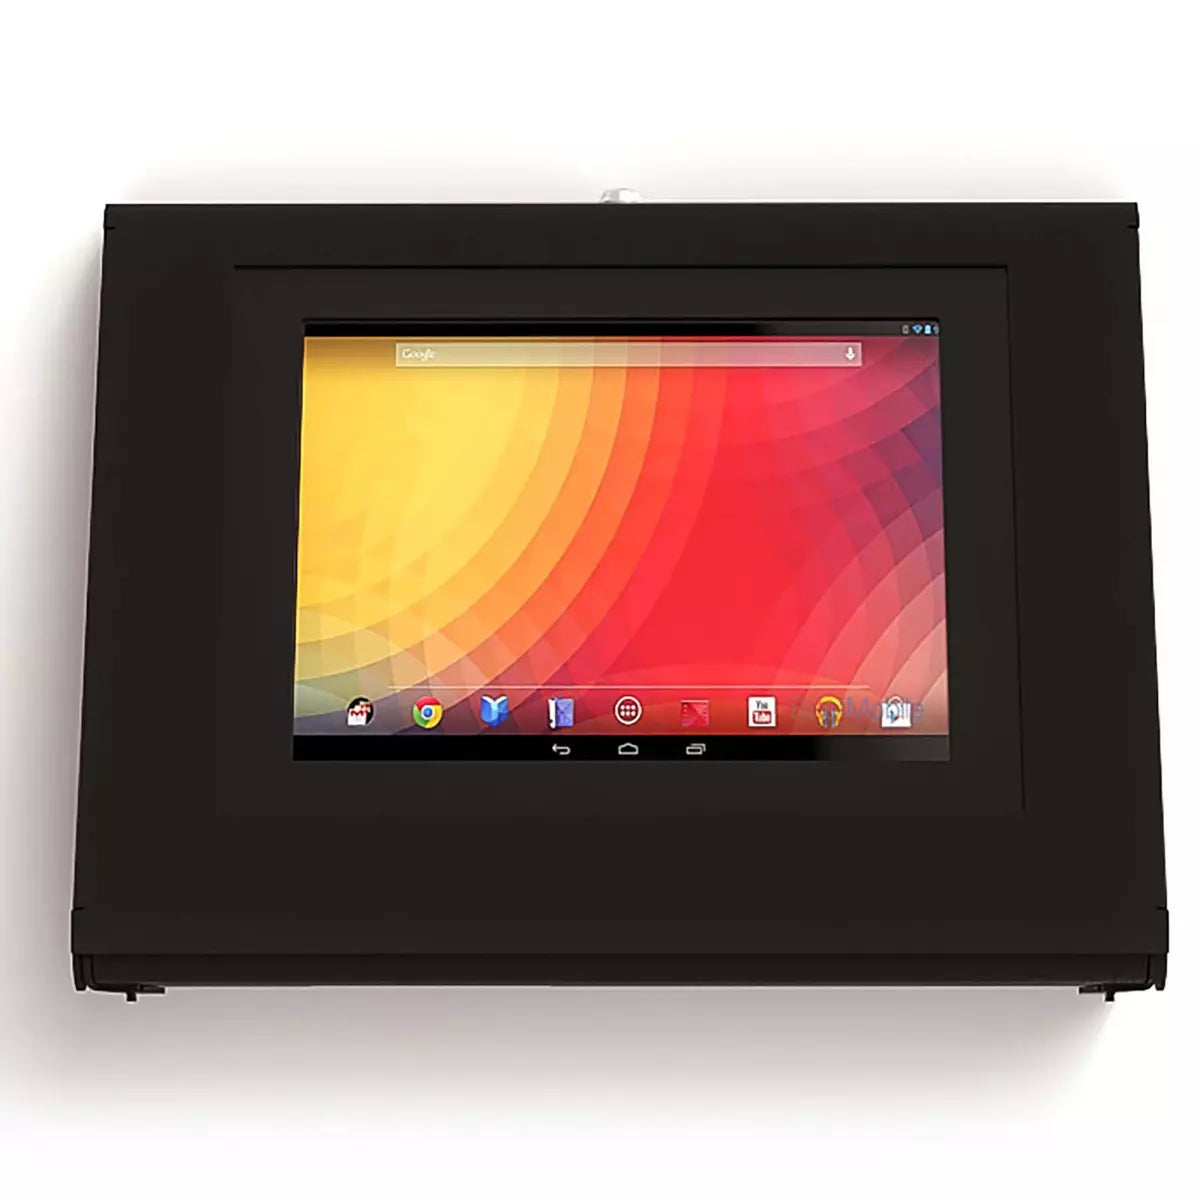 Keyo Surface & Wall Mounted Tablet Enclosure